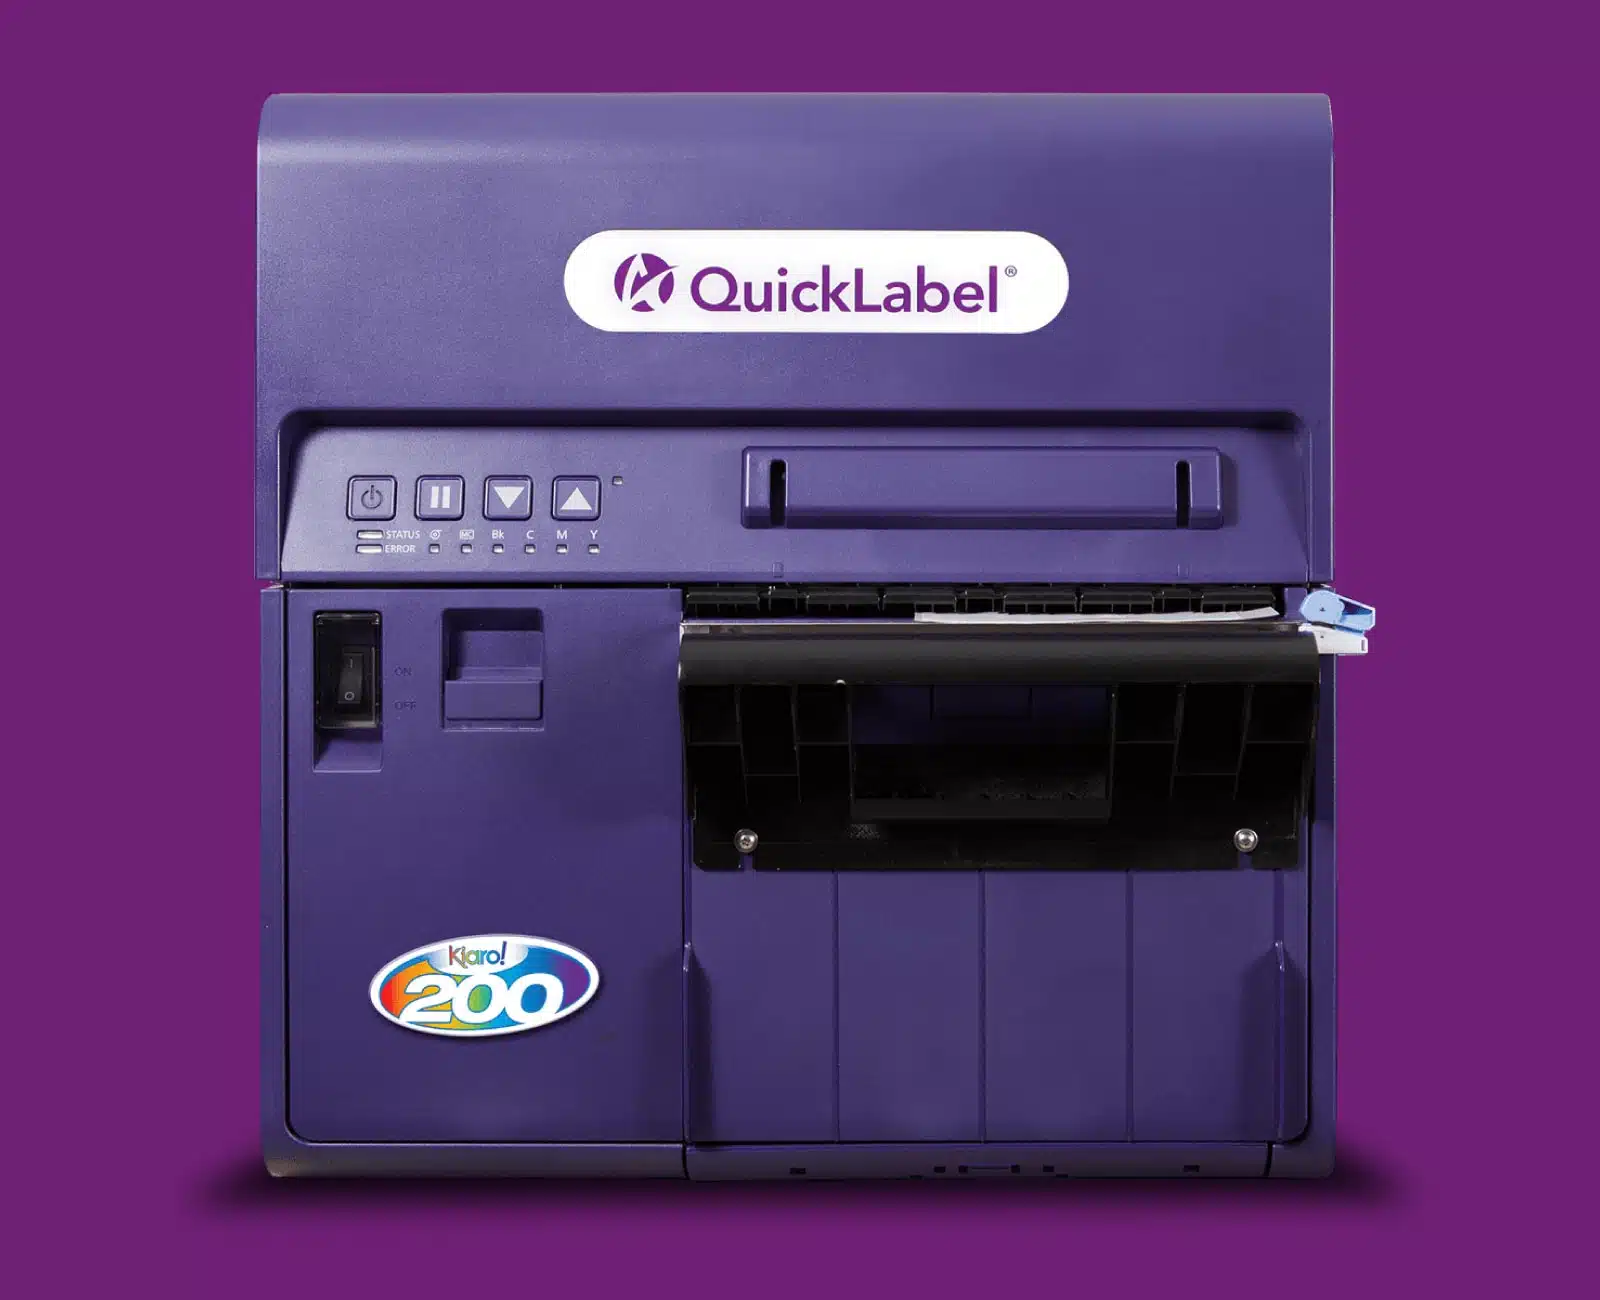 Kiaro! 200 Z-Fold Label Printer AstroNova Product Identification